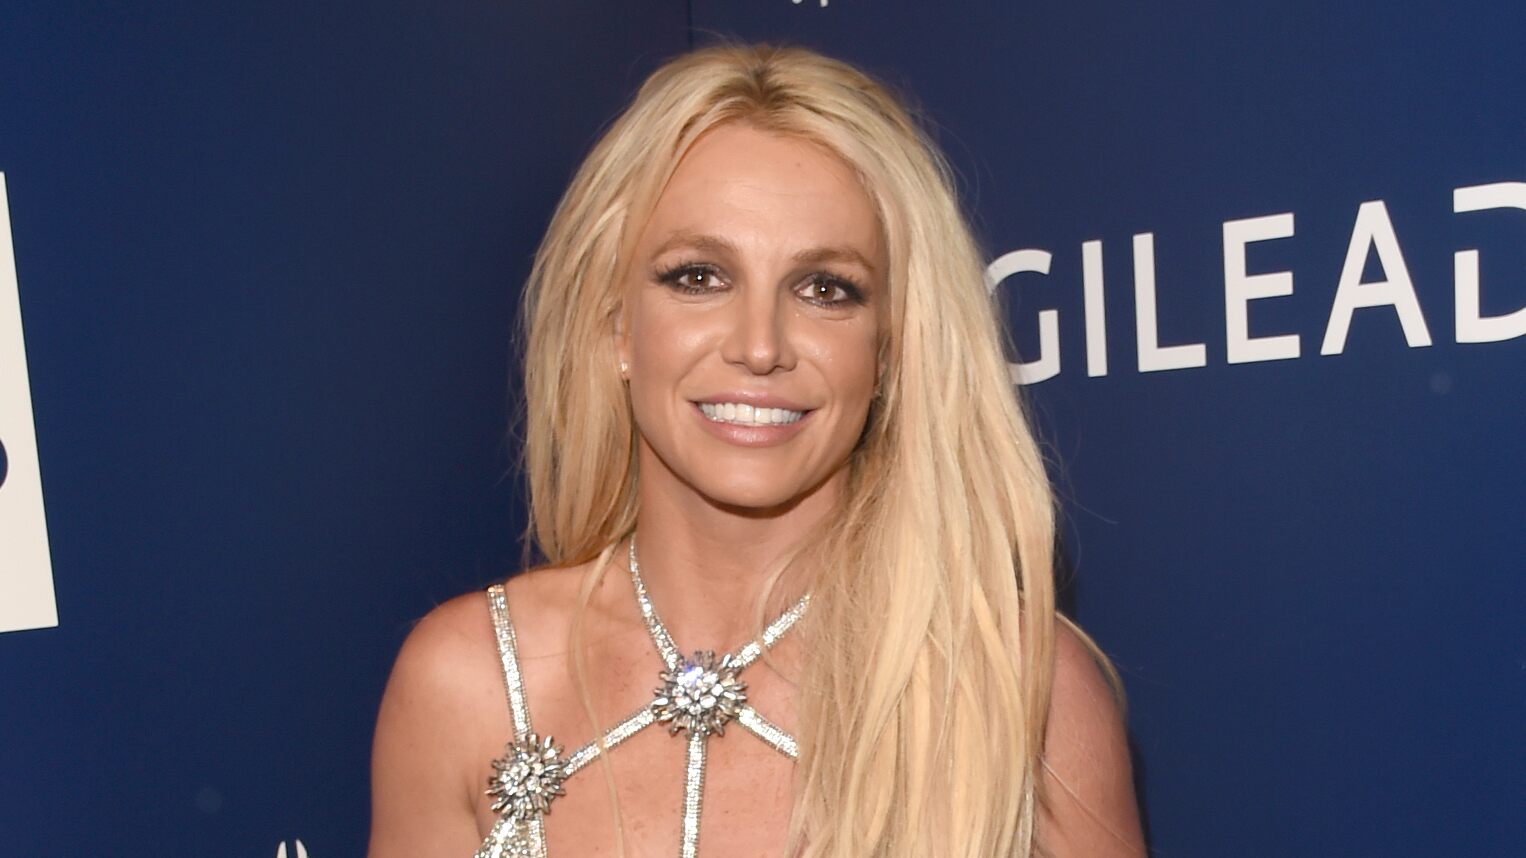 Britney Spears shows off bikini body, yoga skills in new video - www.foxnews.com